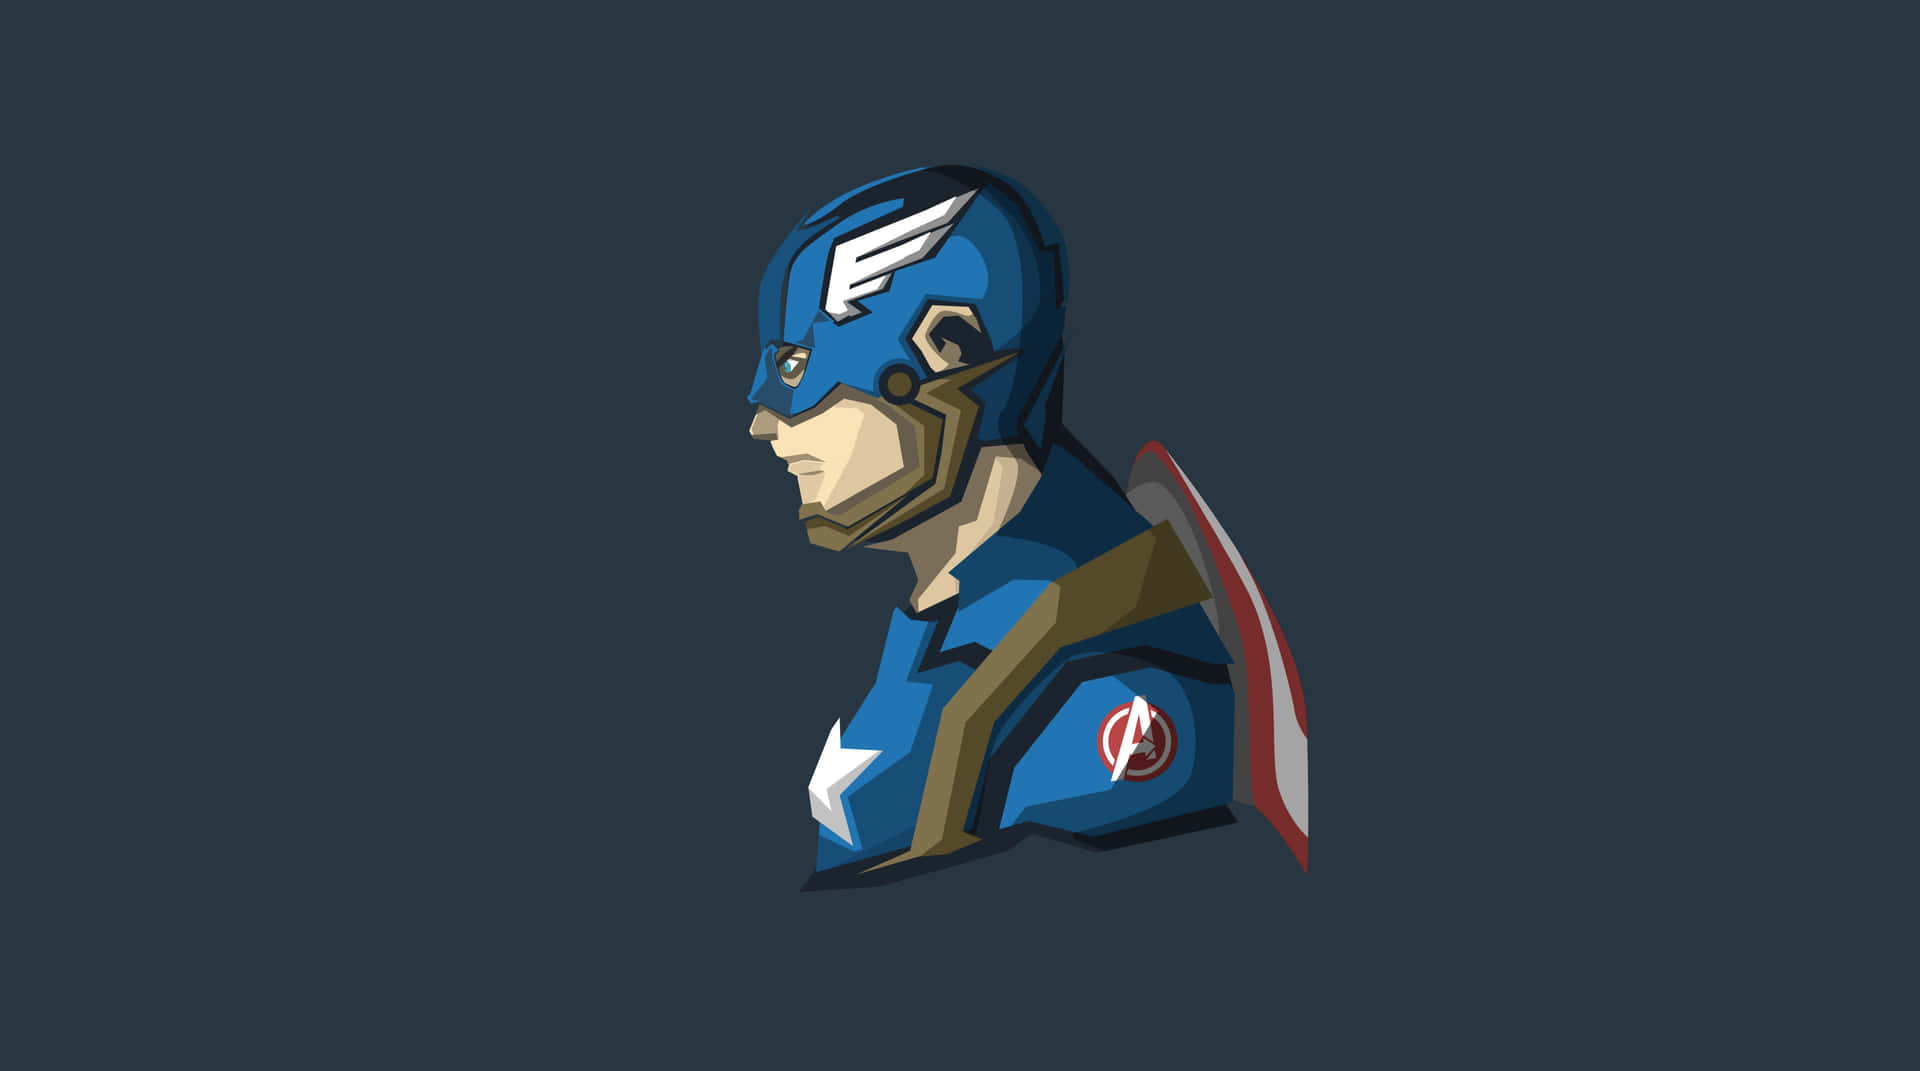 Fondode Pantalla Con El Personaje De Dibujos Animados Del Capitán América De Marvel Comic.